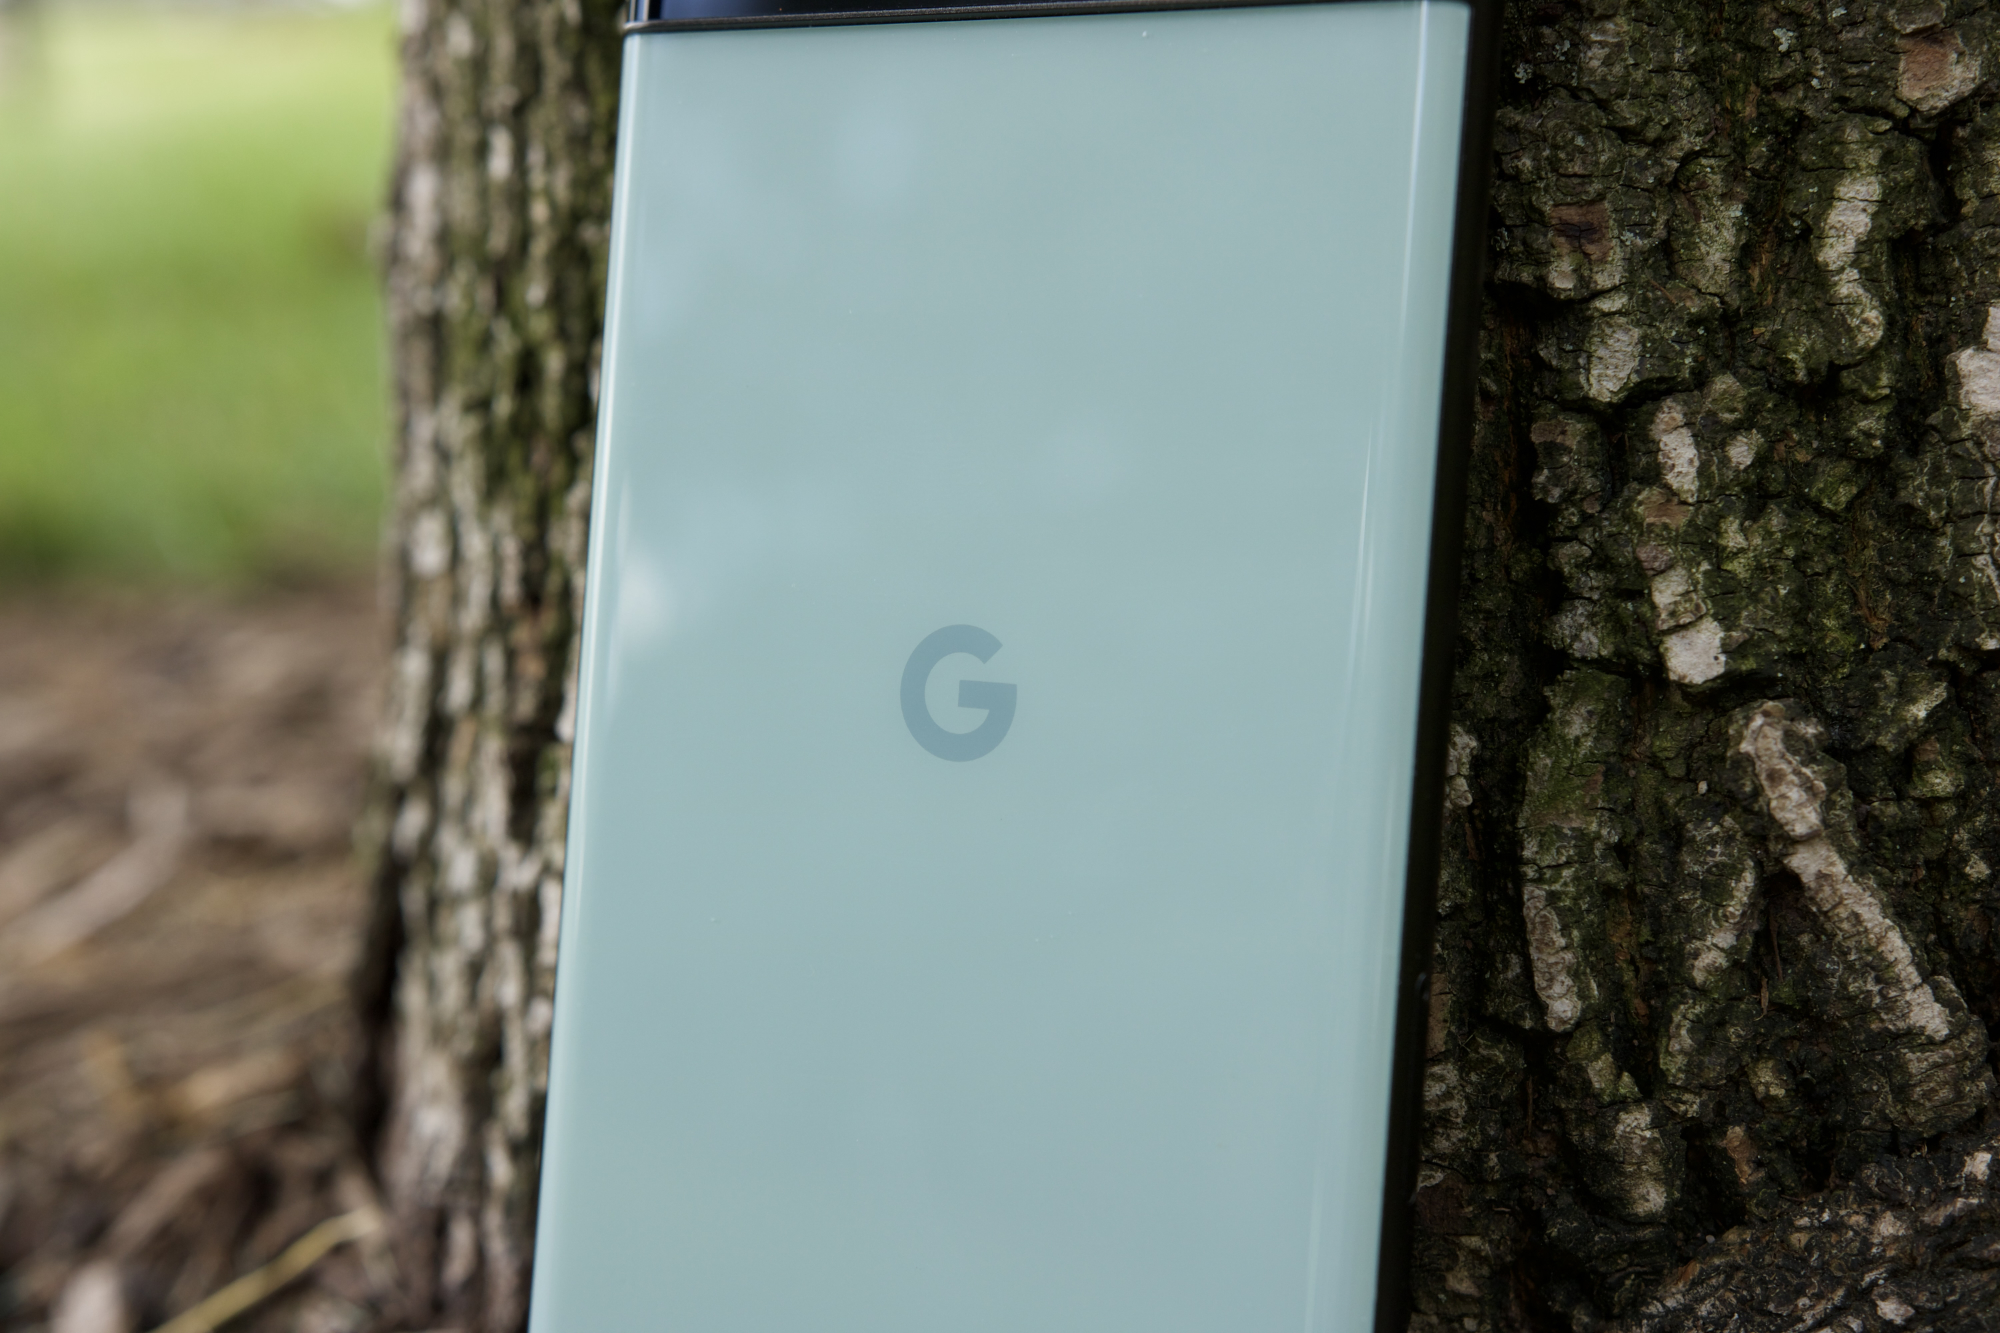 Um close-up do Google Pixel 6a, focado no logotipo do Google do telefone.